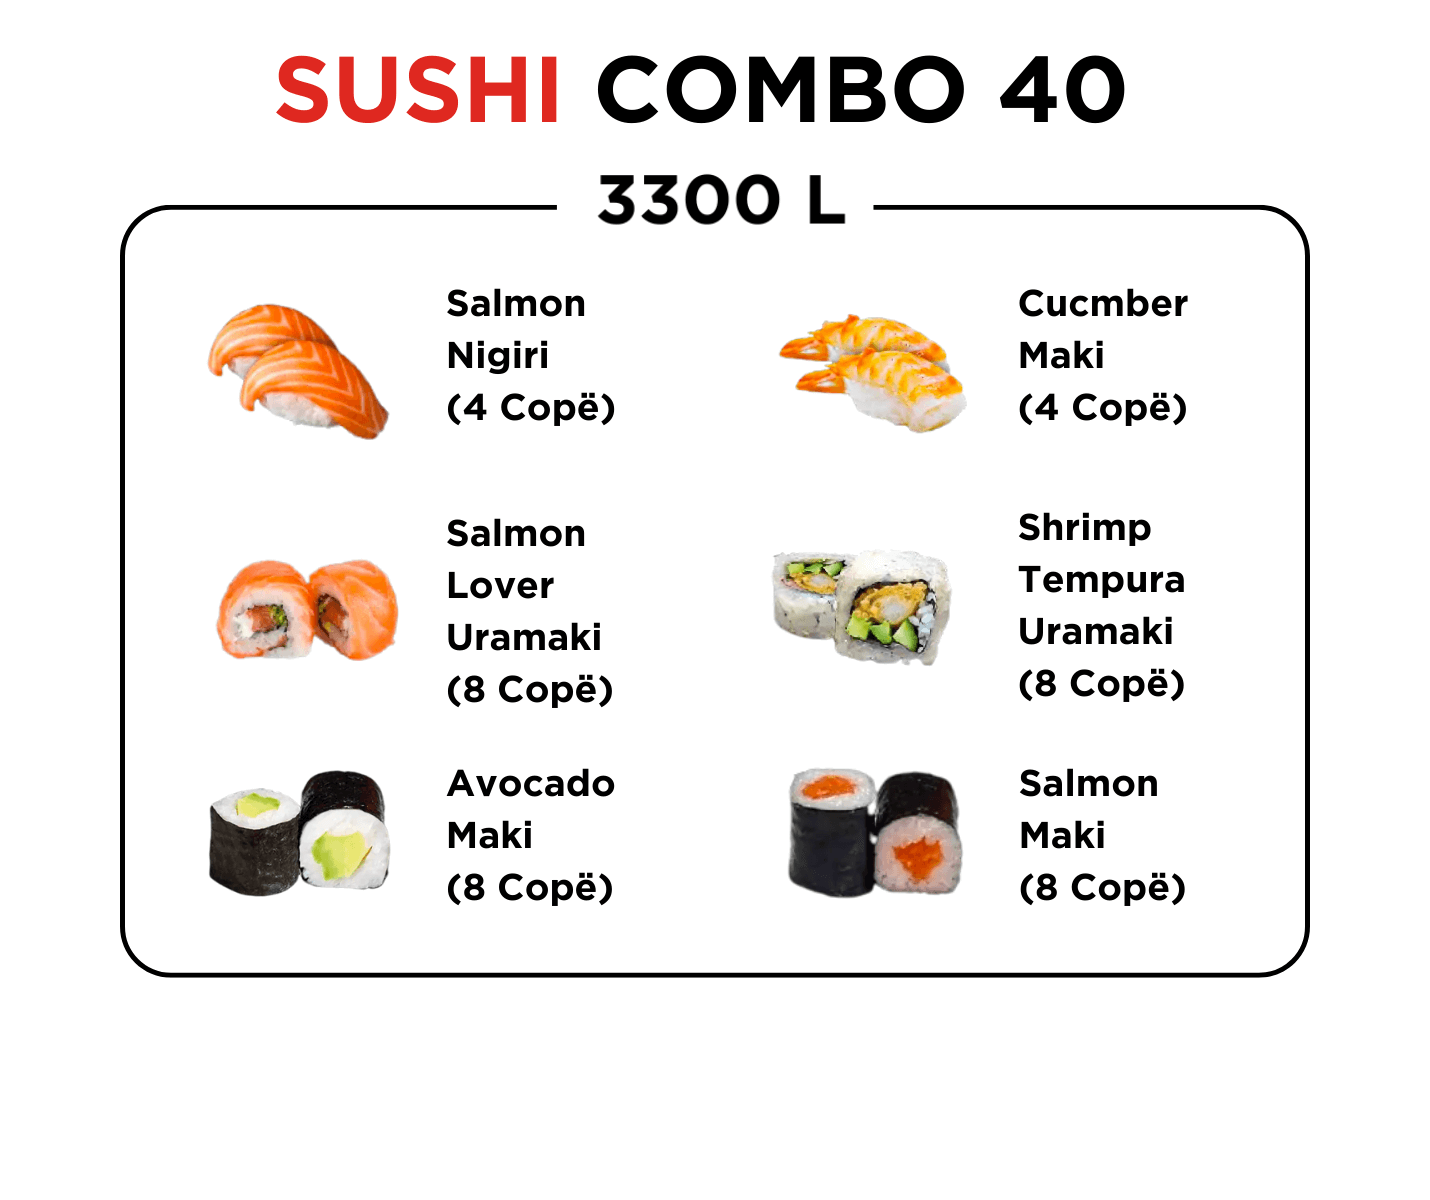 Sushi Combo 40